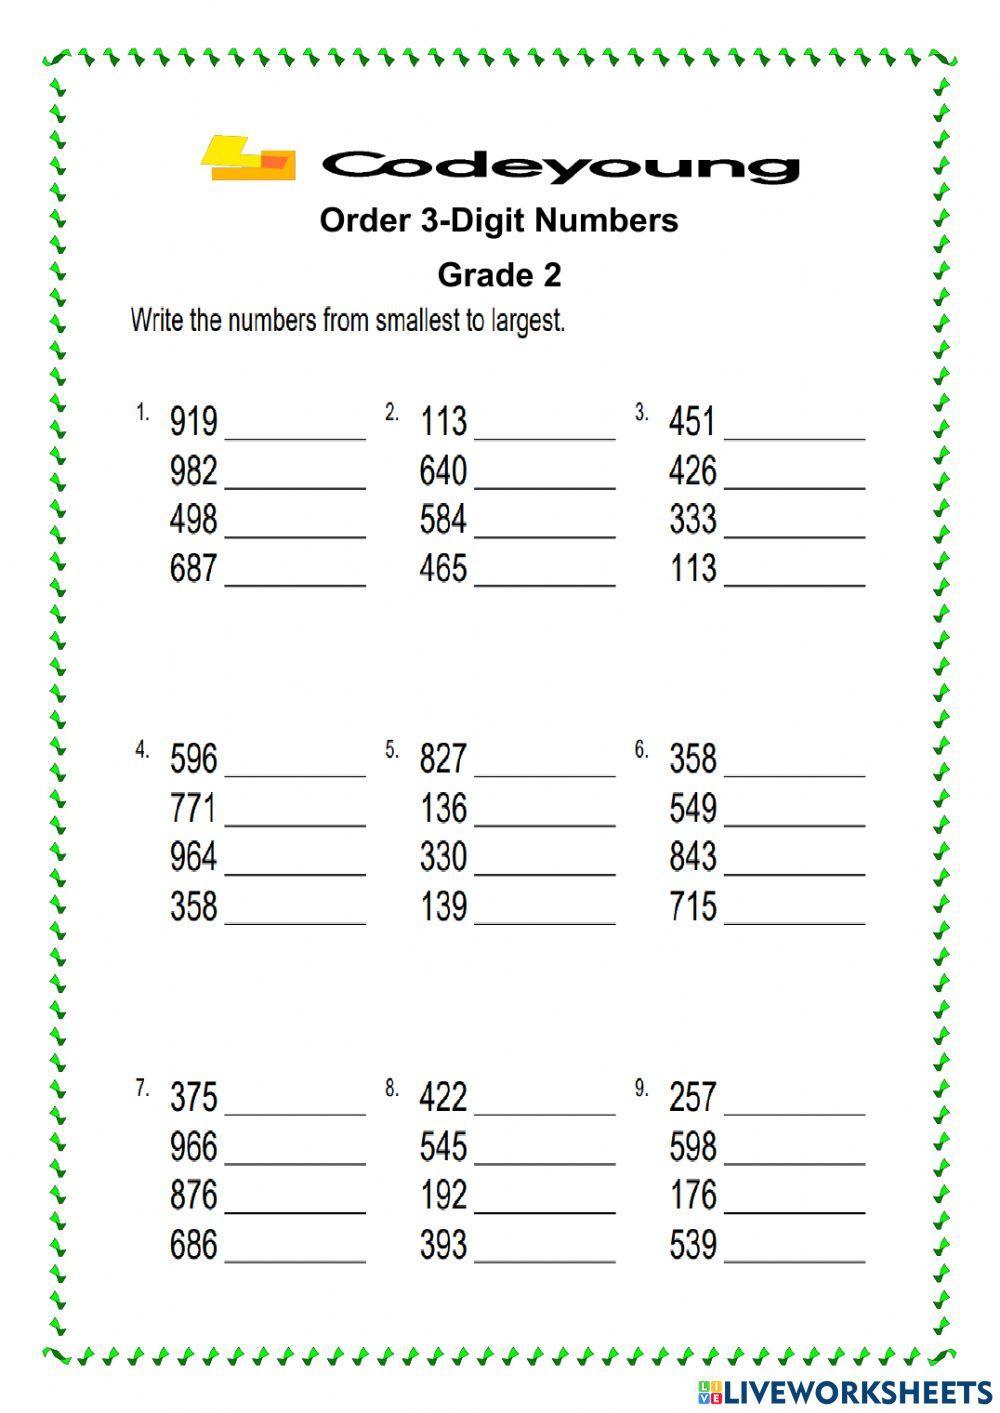 Order 3-Digit Numbers